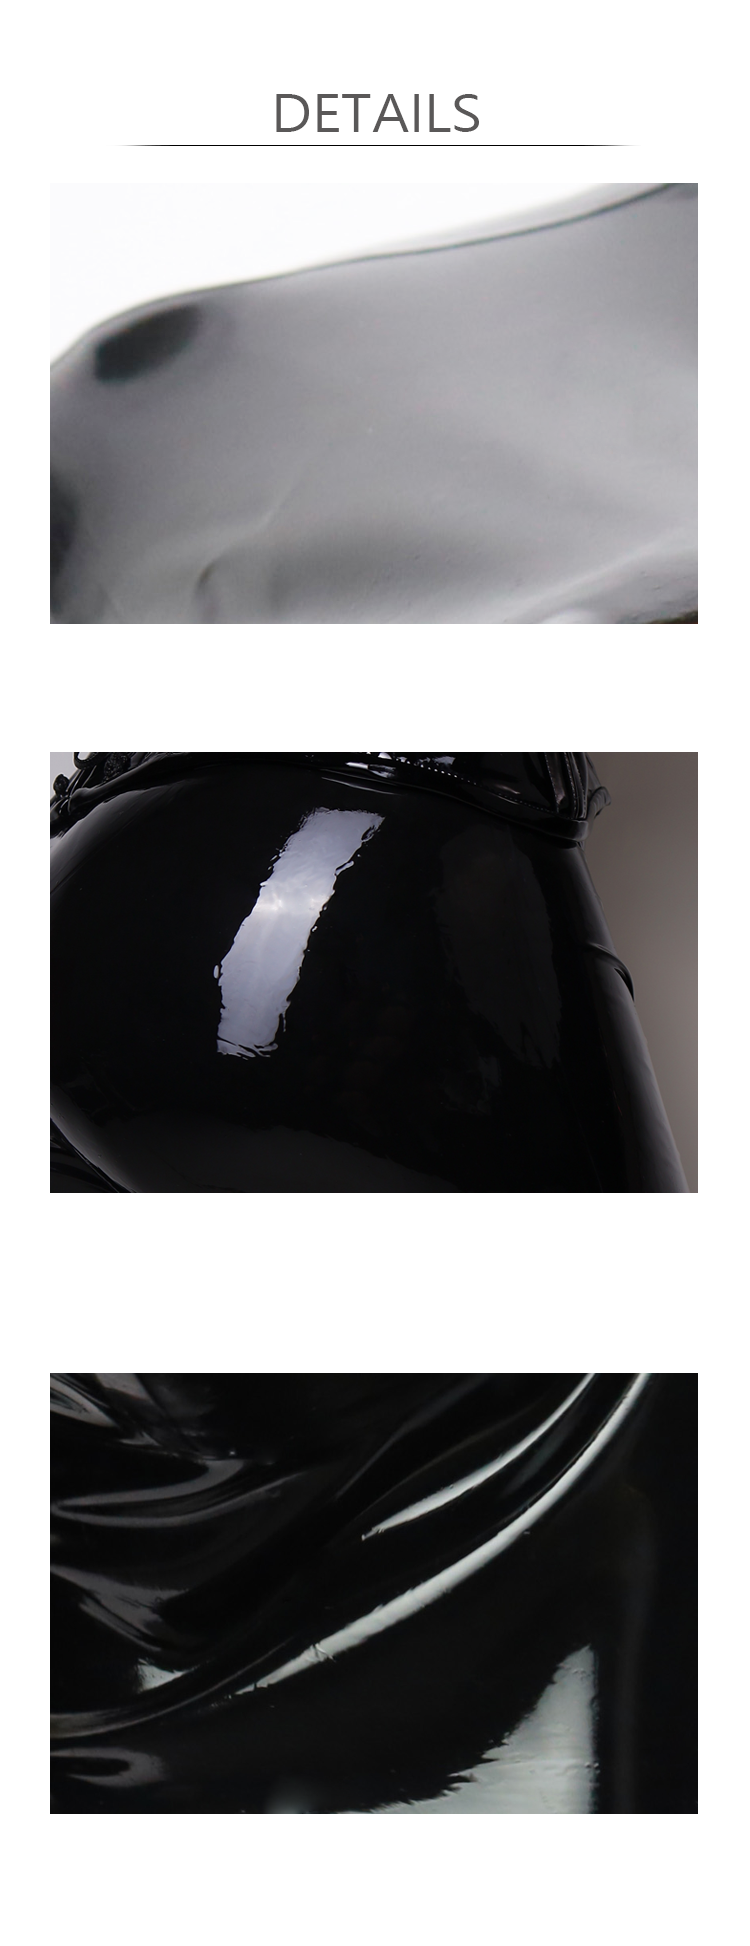 NEOGAN NN15 | „VELO“ nackter und schwarzer Latex-Catsuit, Fake-Body im Dessous-Stil